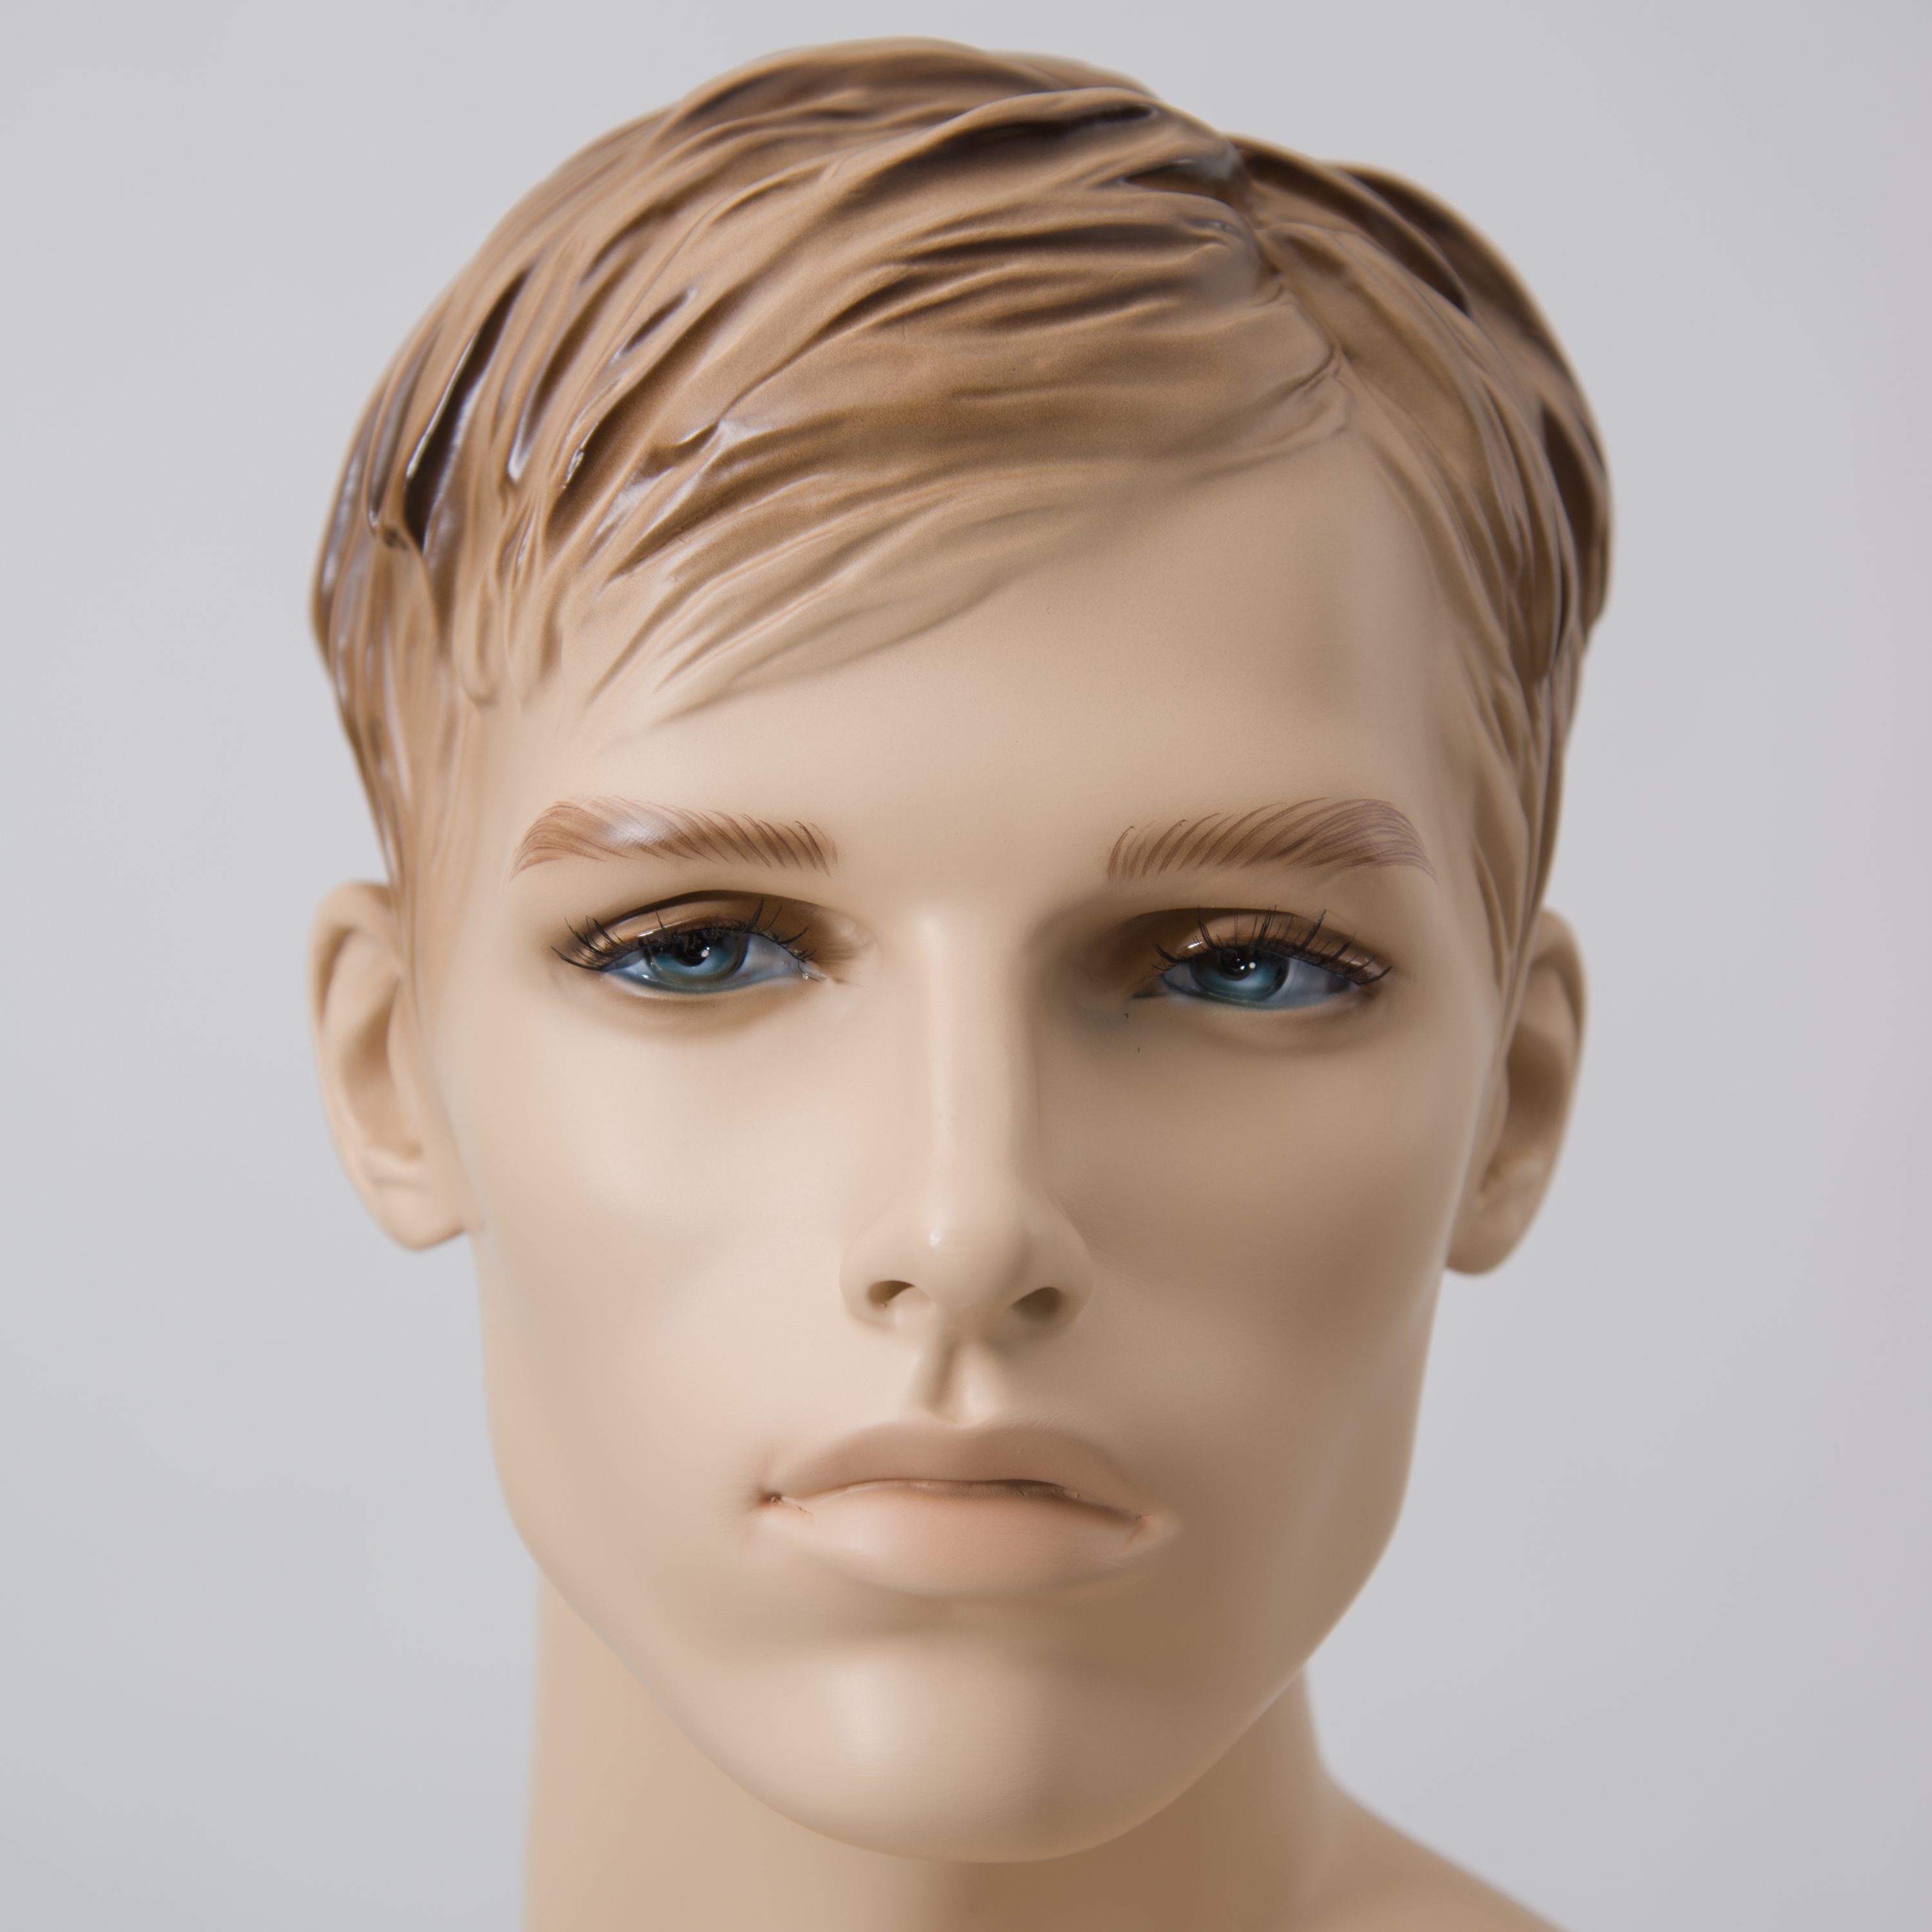 Schaufensterfigur EVO Herr, Konfektionsgröße 46, hautfarbe, mit modelliertem Haar, aus Fiberglas, inkl. Glasstandplatte rund 38cm